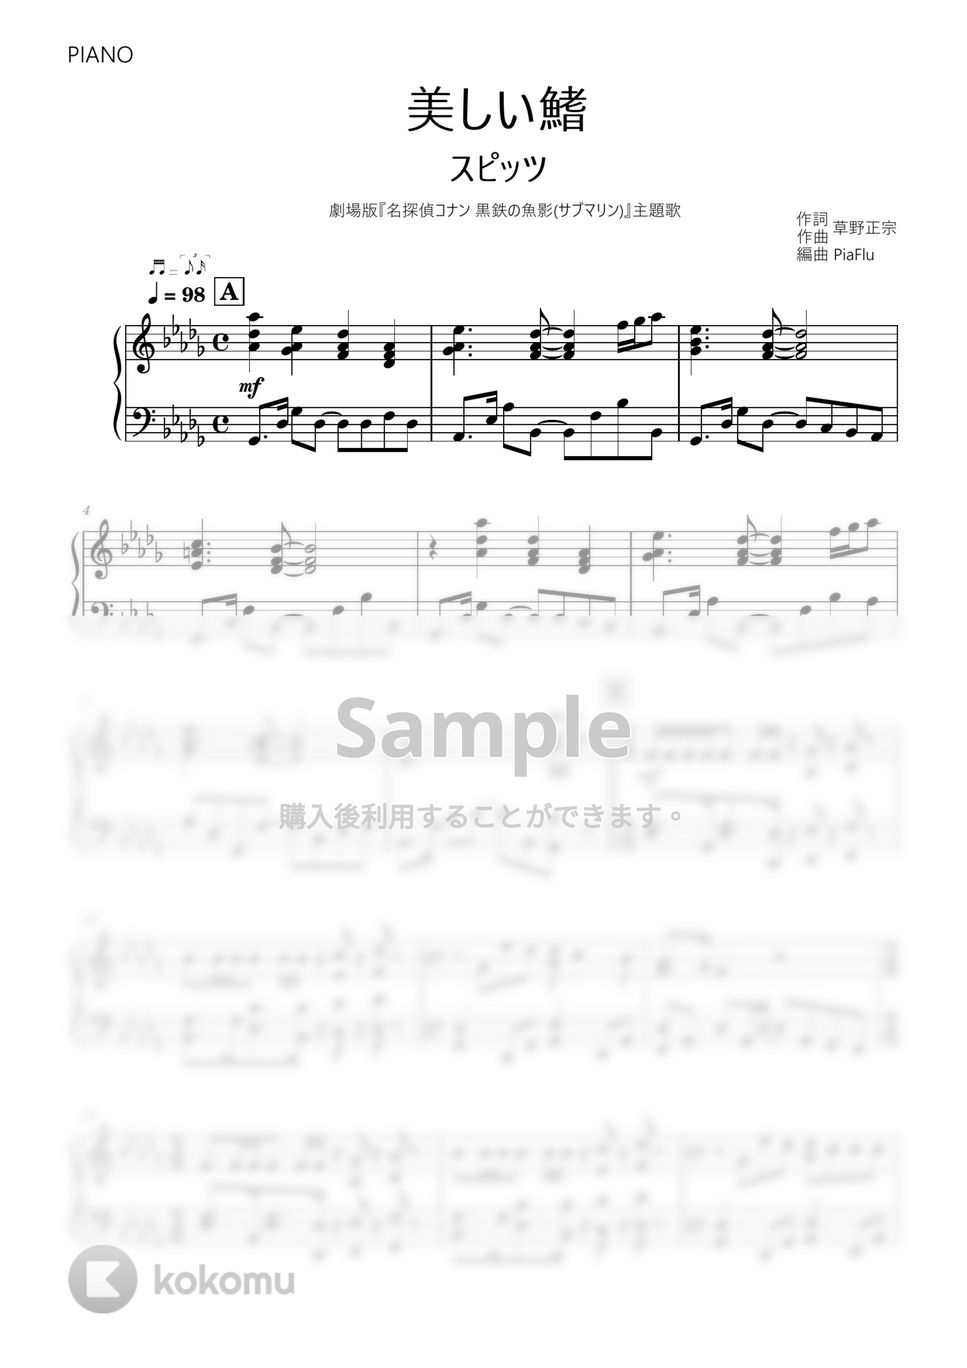 スピッツ - 美しい鰭 (ピアノ) by PiaFlu